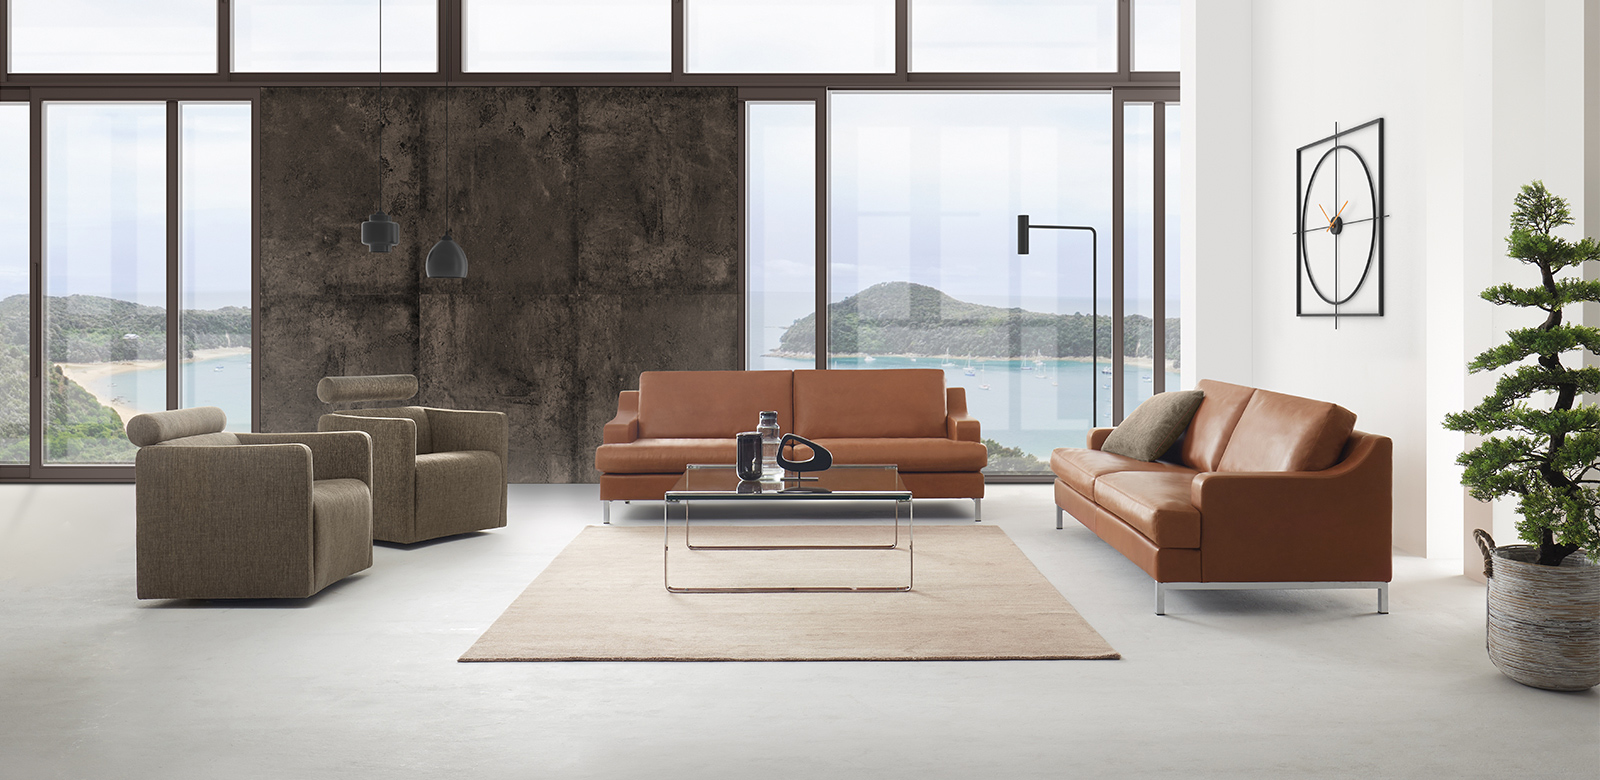 CL770 in bruin leer met twee stoffen fauteuils in moderne loft woonkamer met uitzicht op het meer